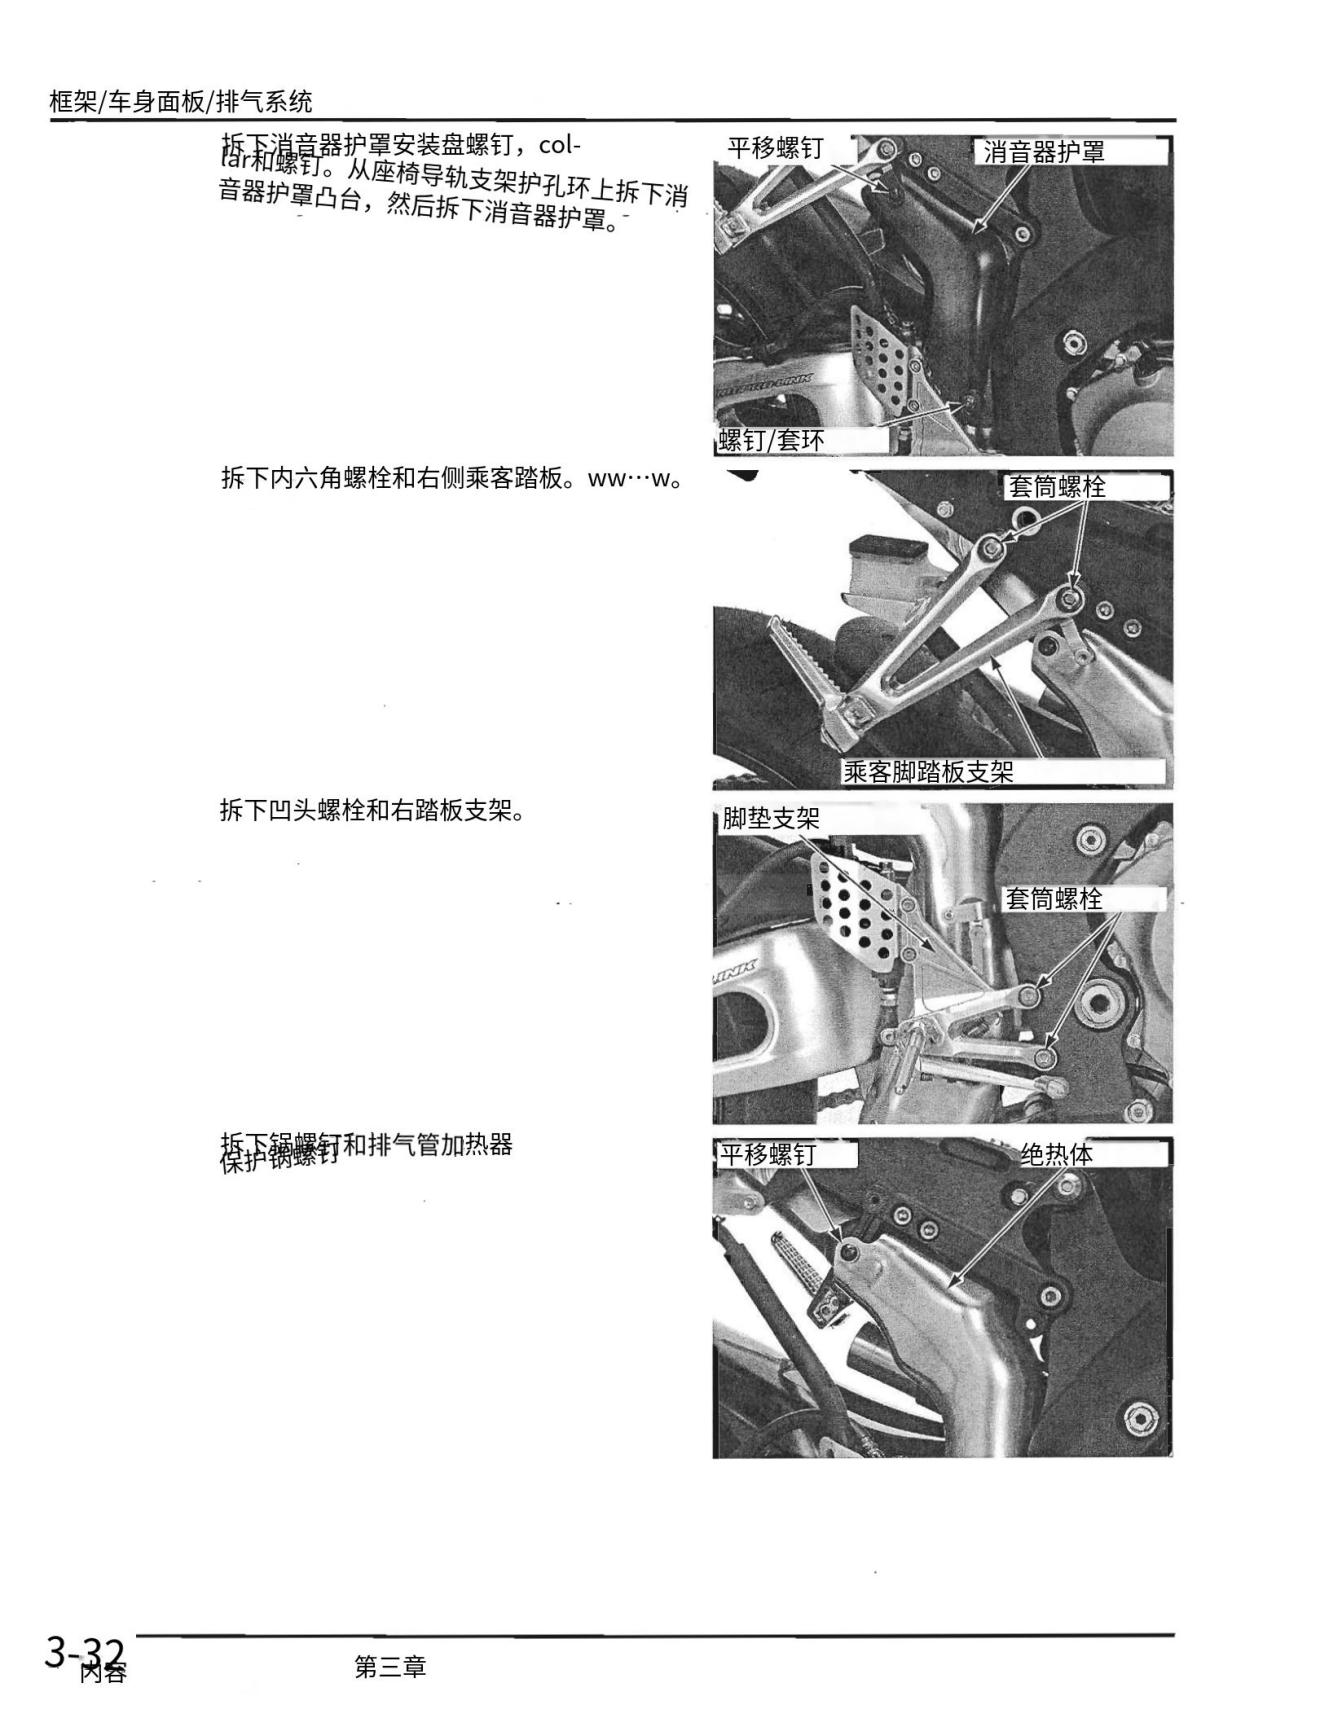 简体中文2004-2007HONDACBR1000RR维修手册插图1